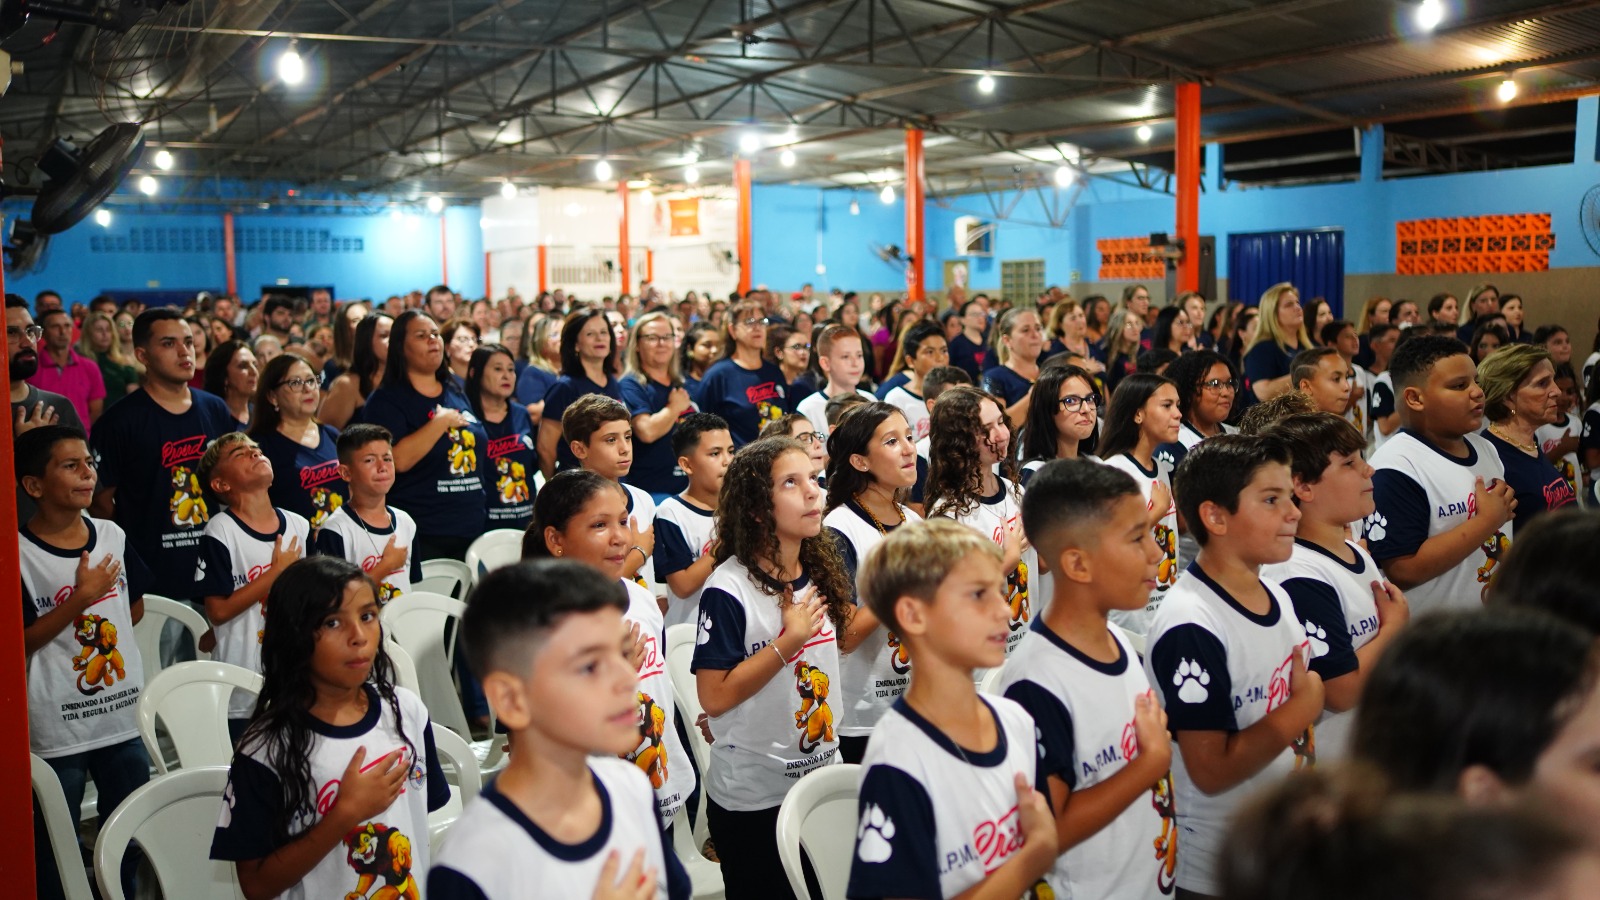 Cerimônia de Formatura do PROERD - Alunos da Escola Maria da Glória - Foto: Gala Formaturas Fotografias, por Jesus Garros